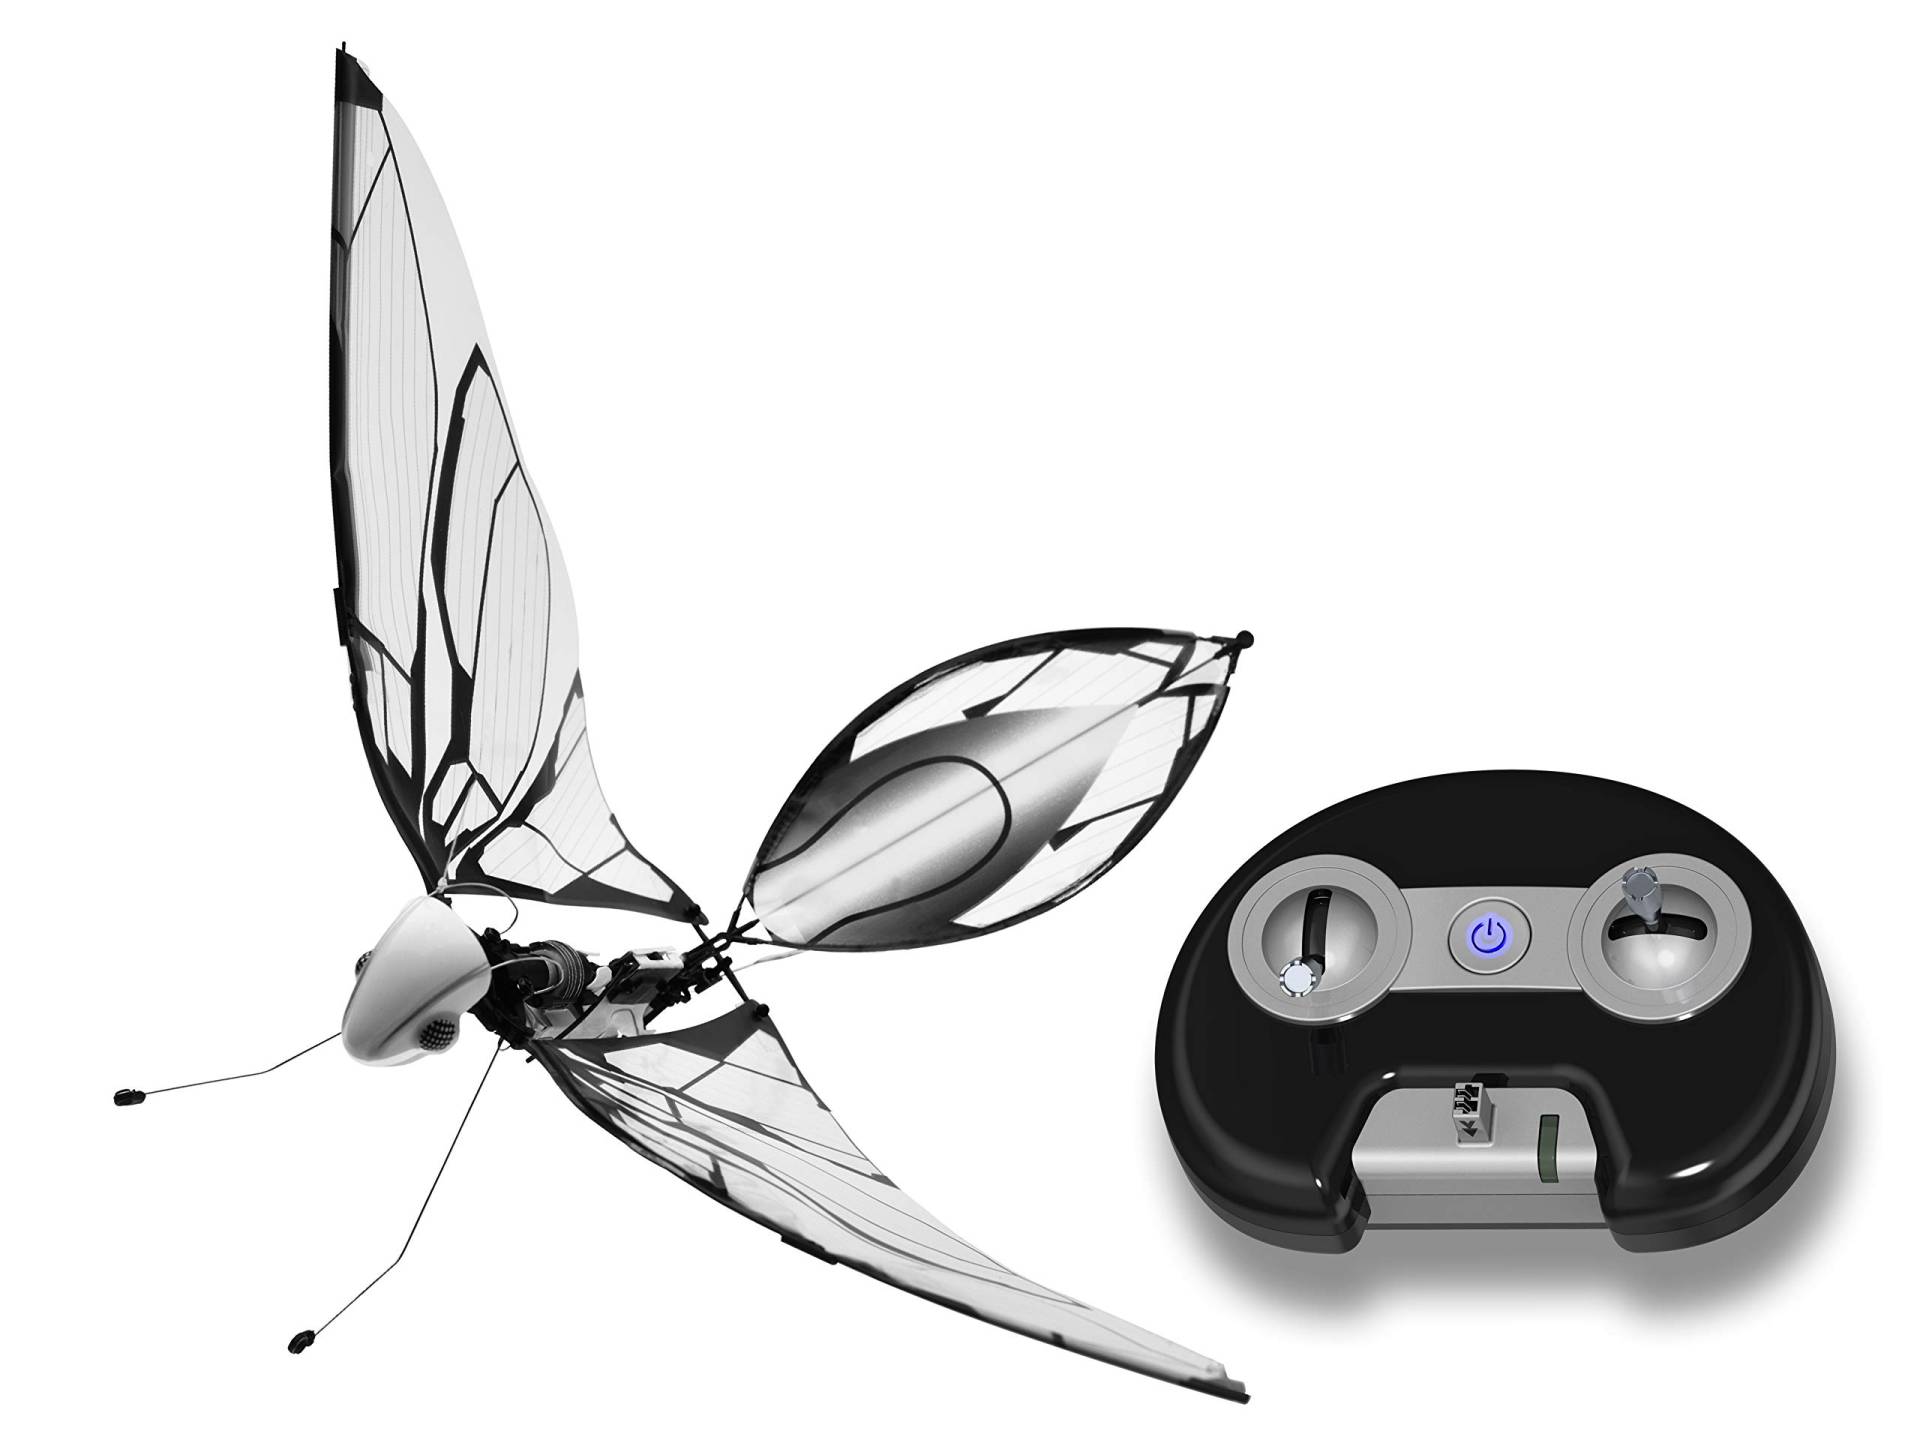 MetaFly Standard Kit by Bionic Bird - Elektronische, biomimetische High-Tech-Funkferngesteuerte Insekt-Drohne ohne zusätzliches Zubehör von BionicBird